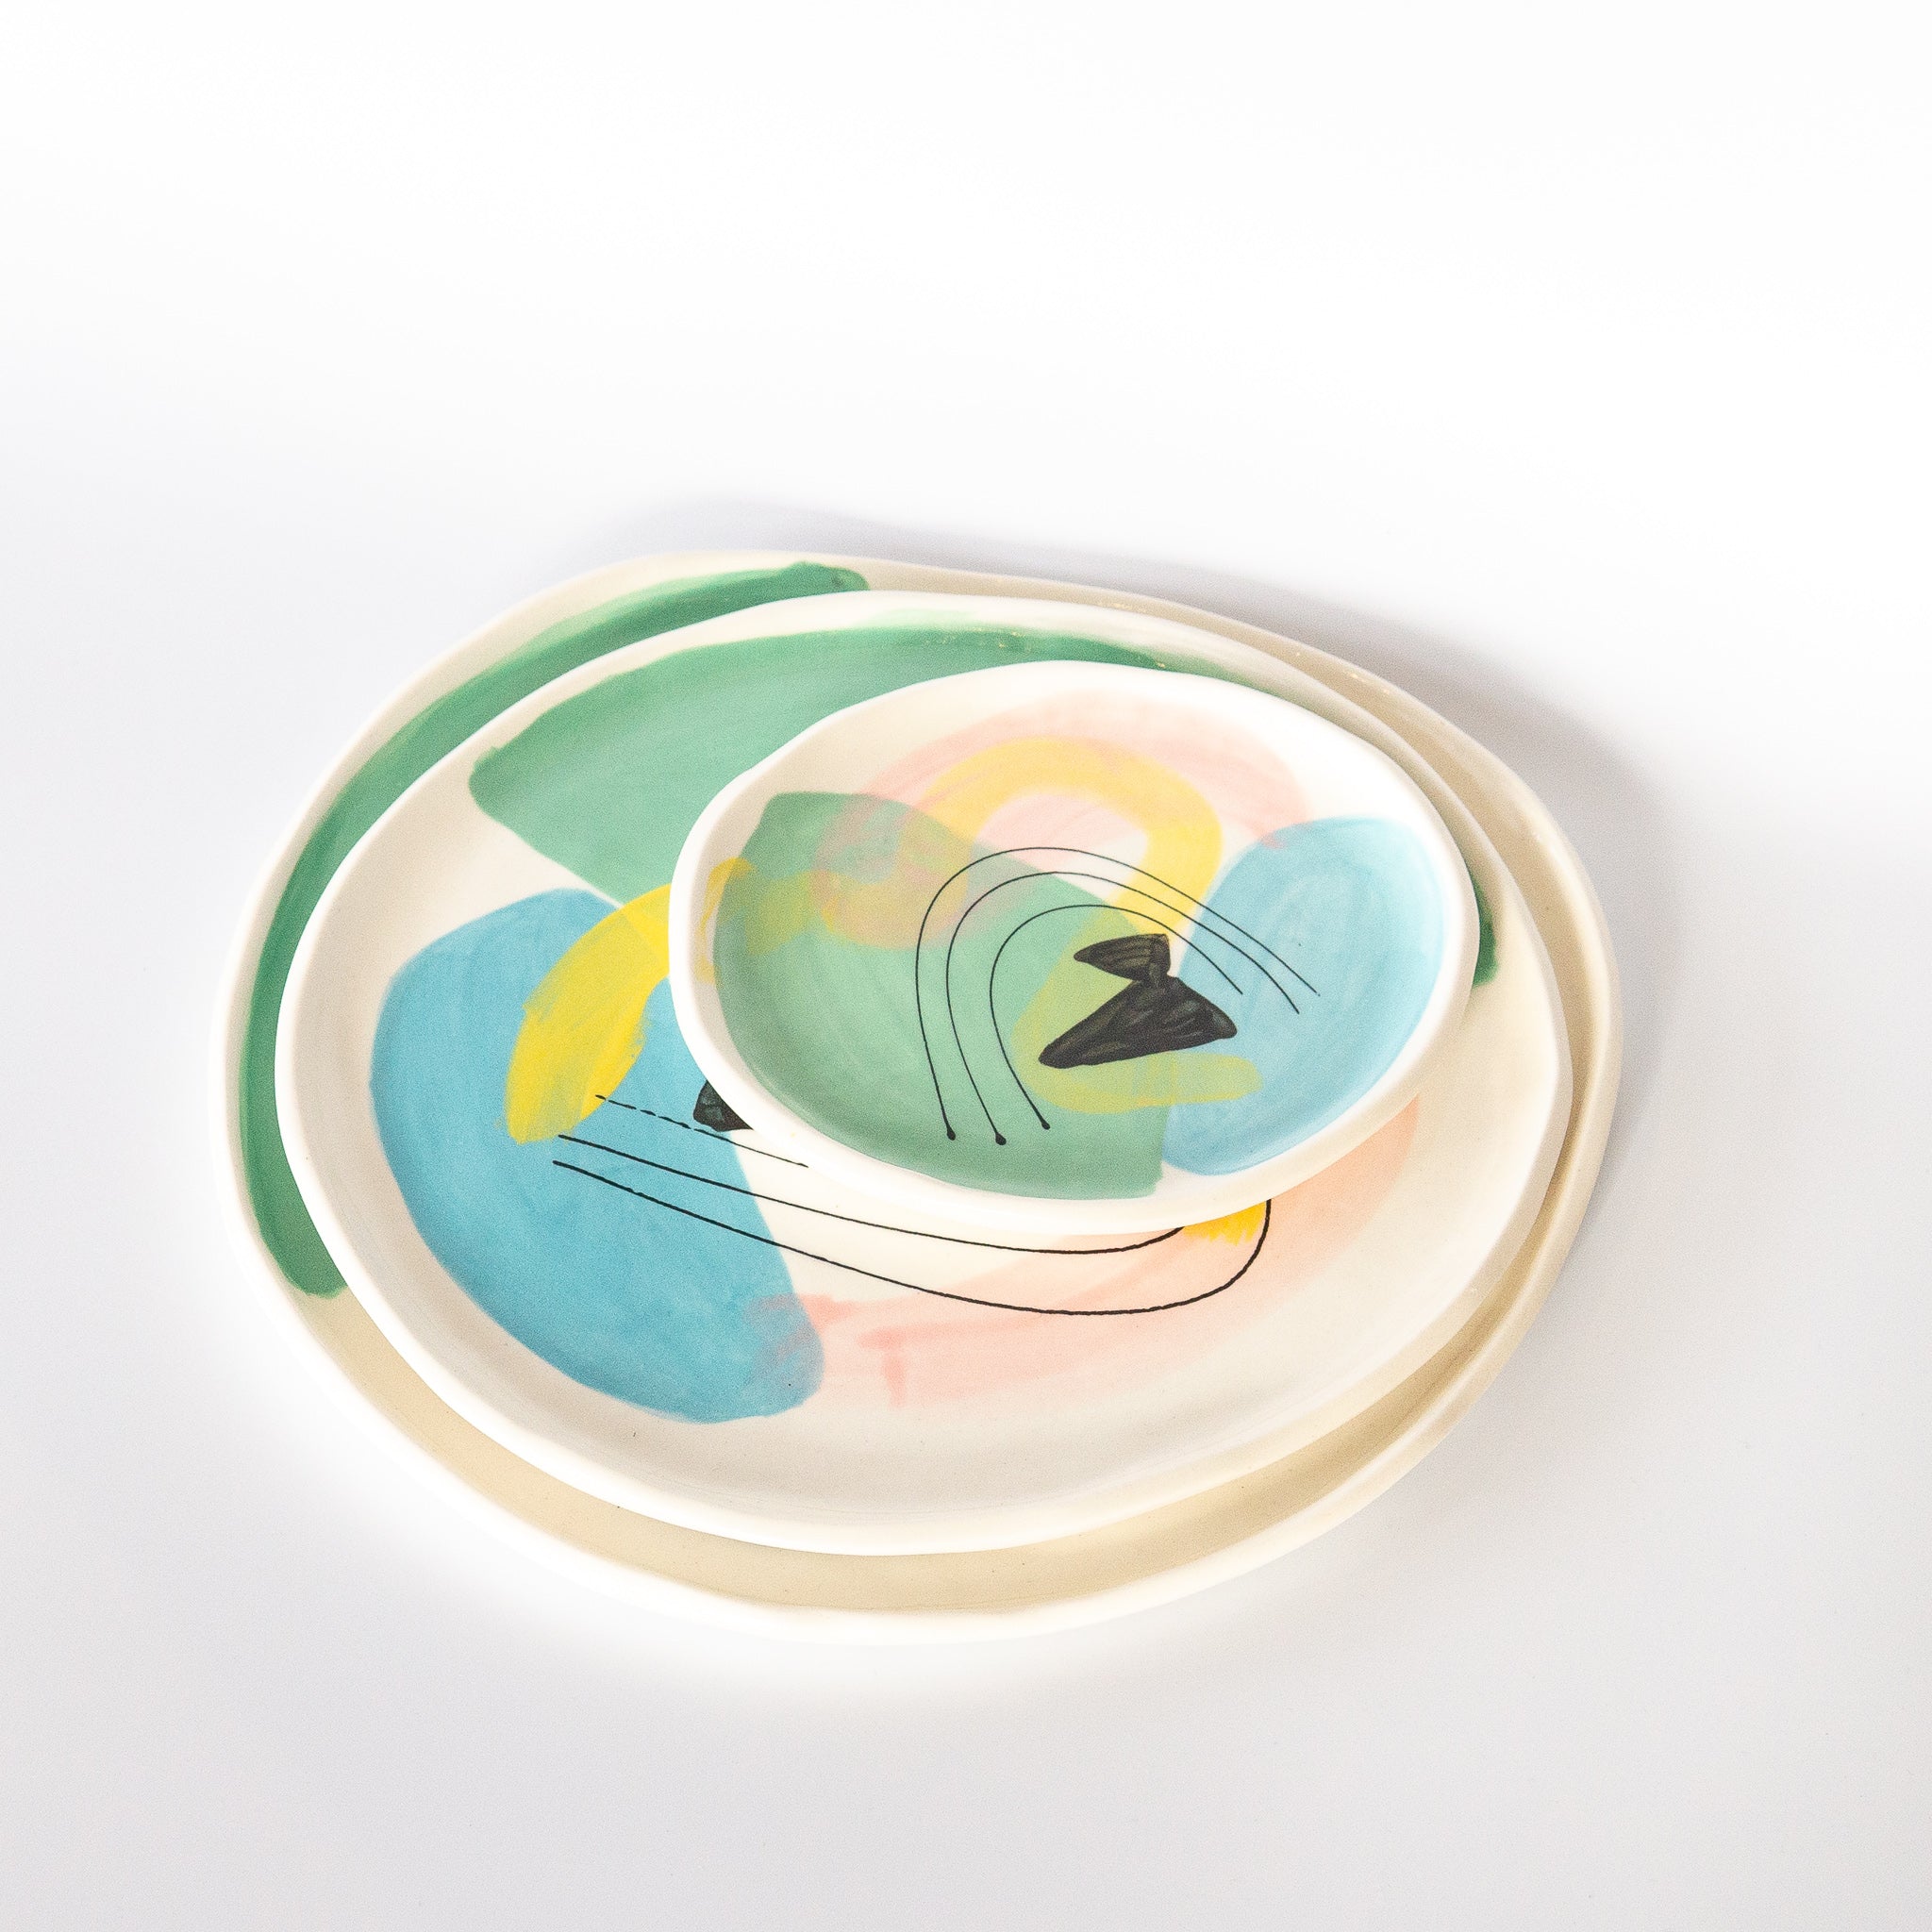 Technicolor Dino: Porcelain Plates